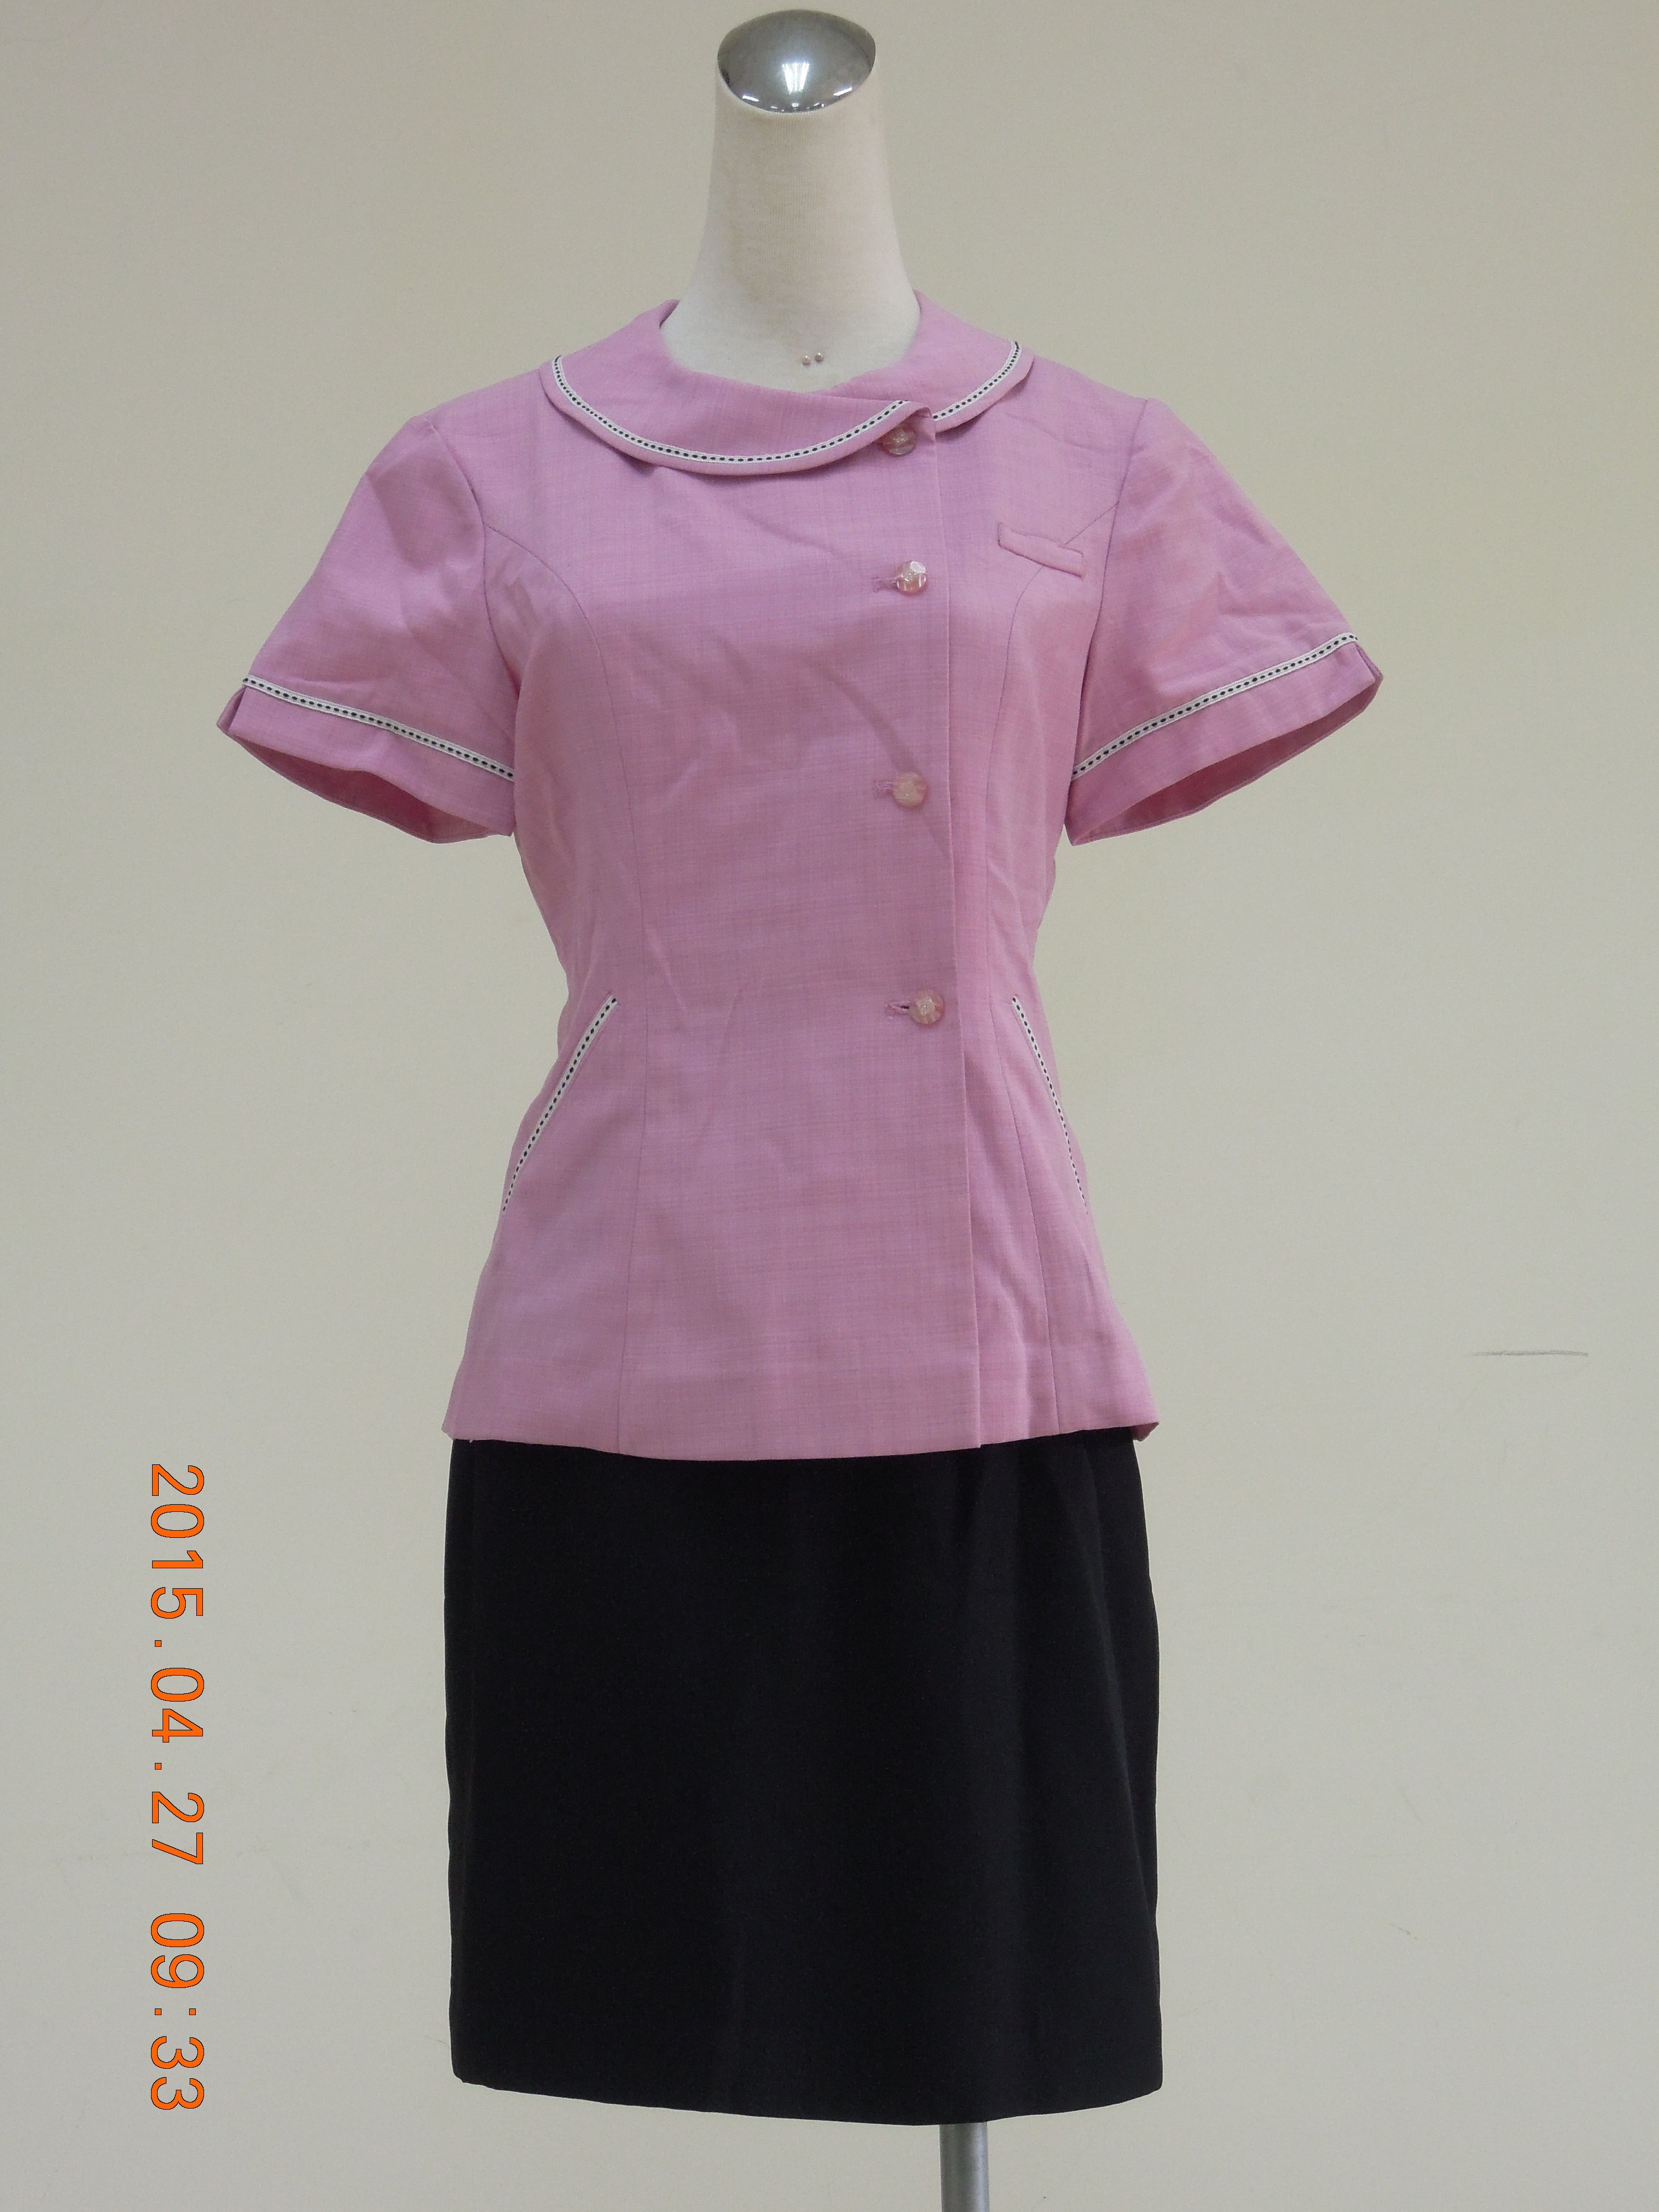 收費員制服之90至99年代夏粉紅上衣黑裙套裝